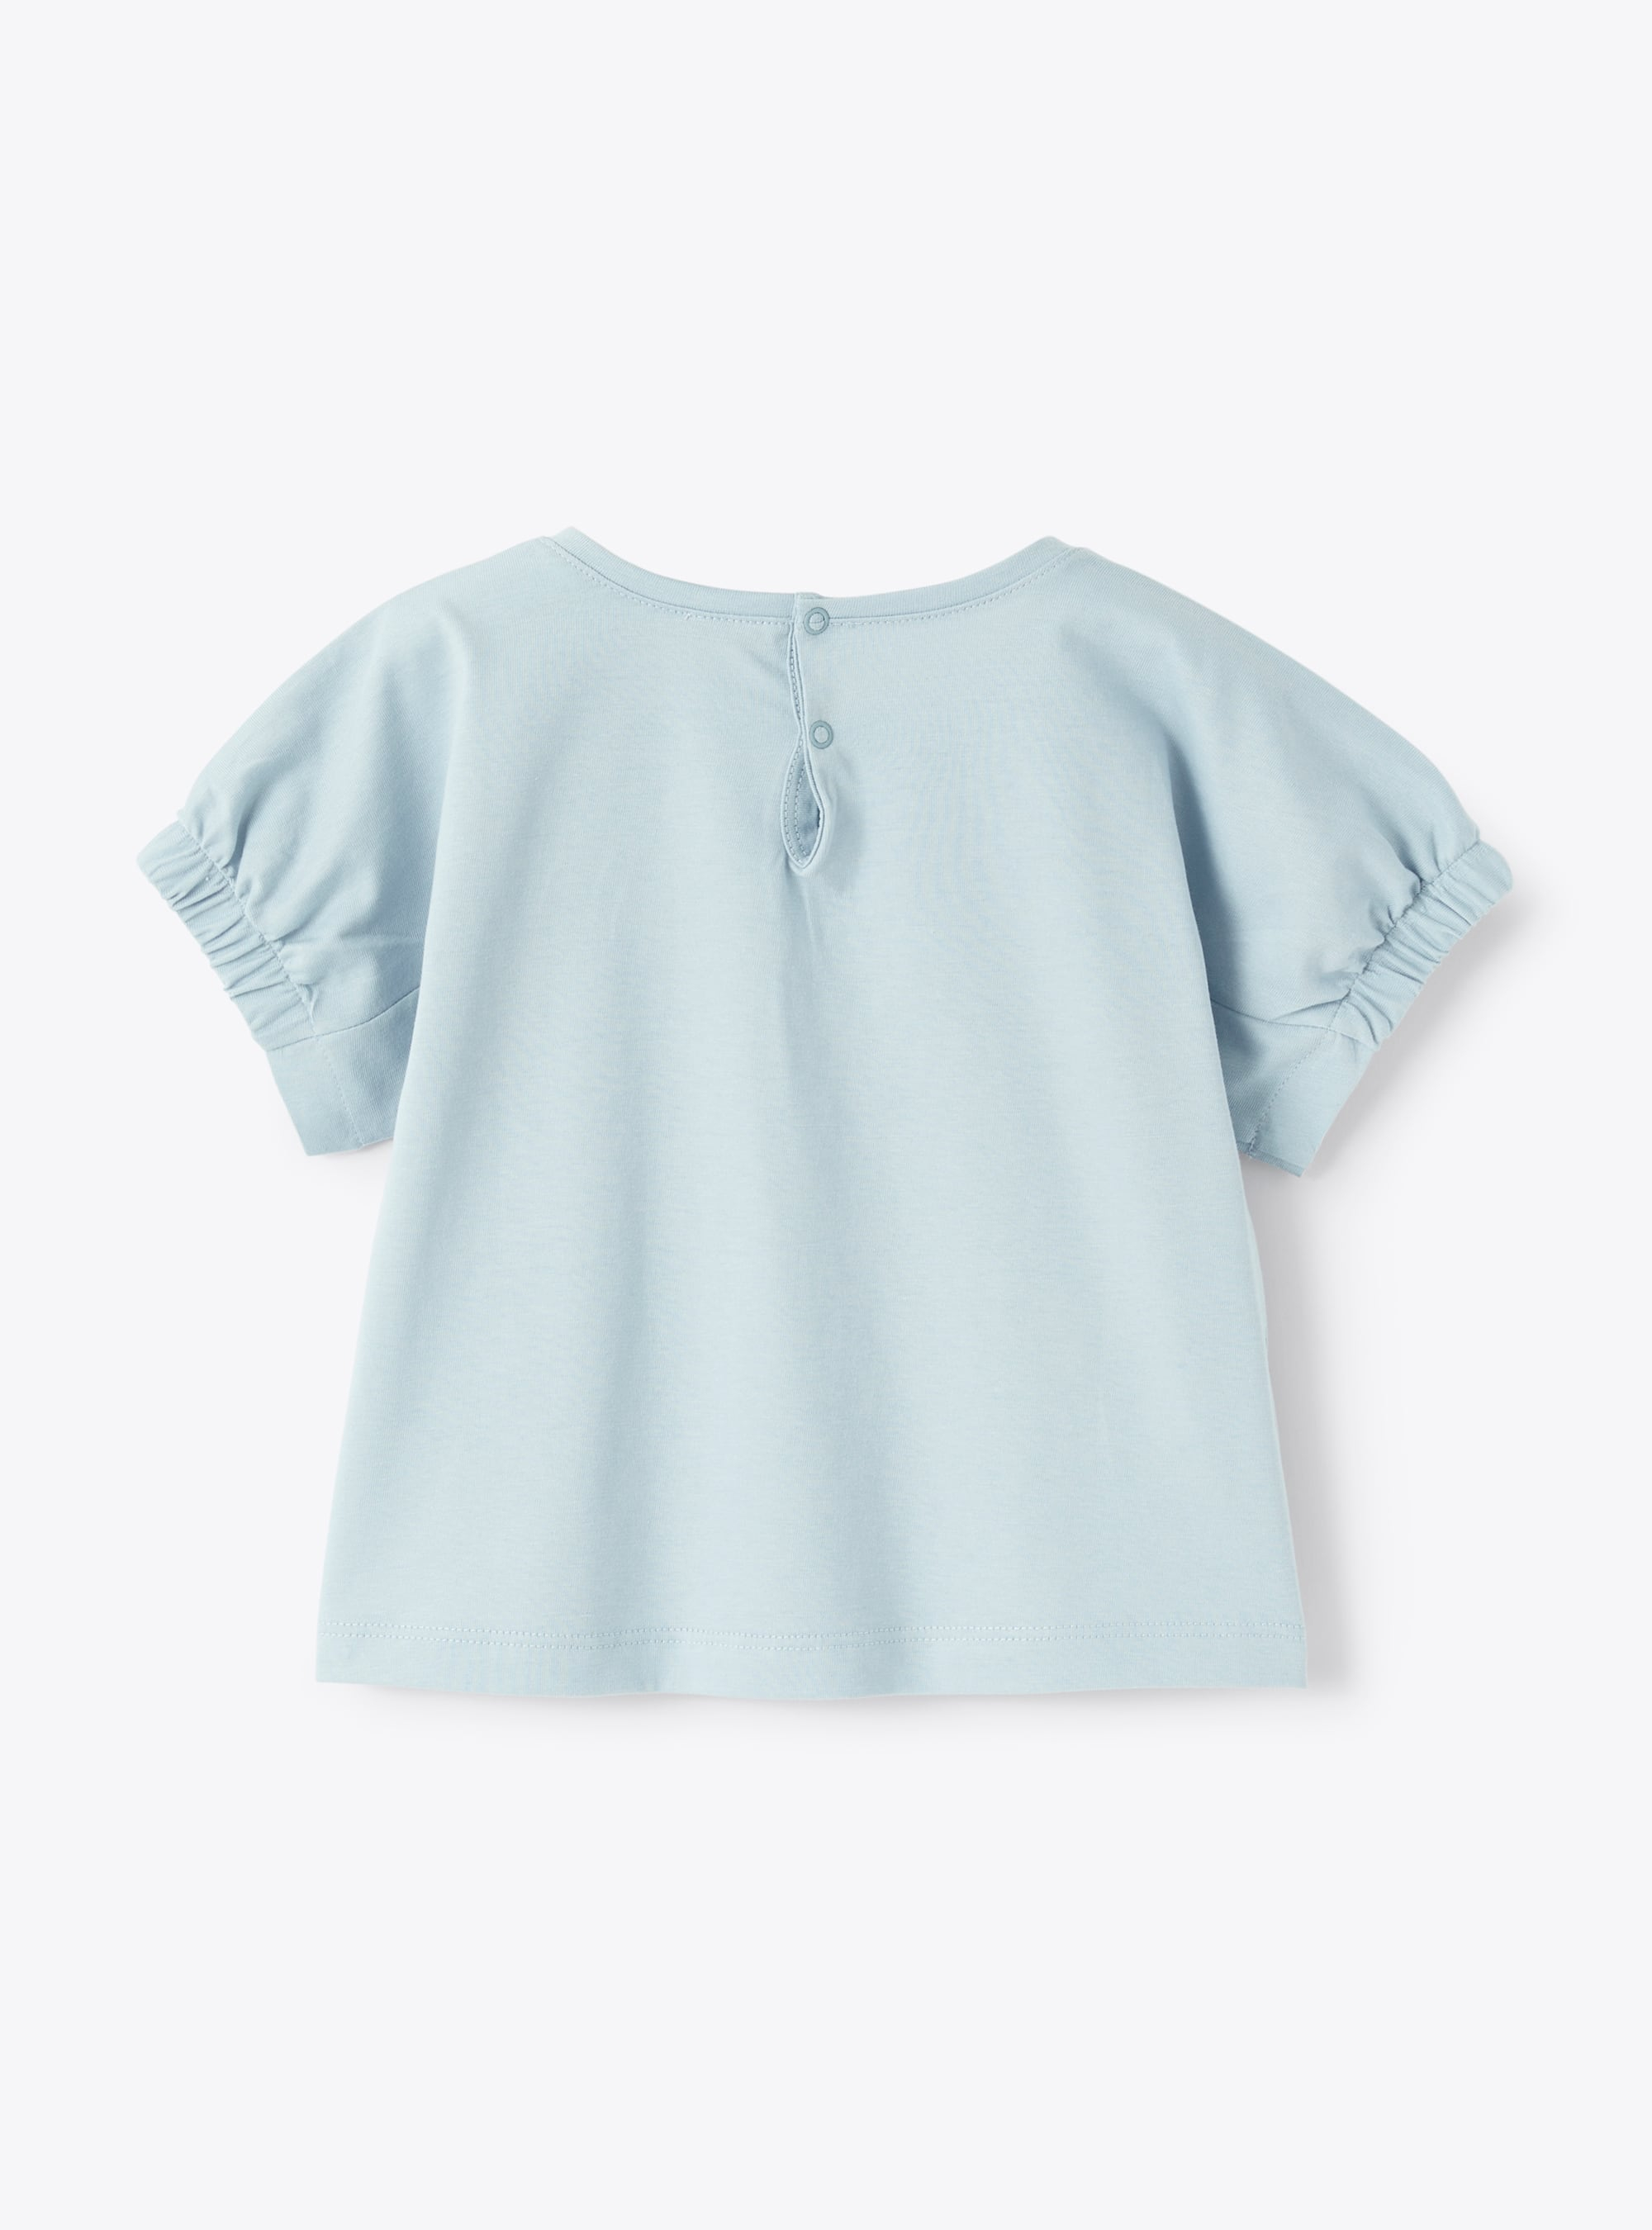 T-shirt celeste a manica corta celeste - Azzurro | Il Gufo